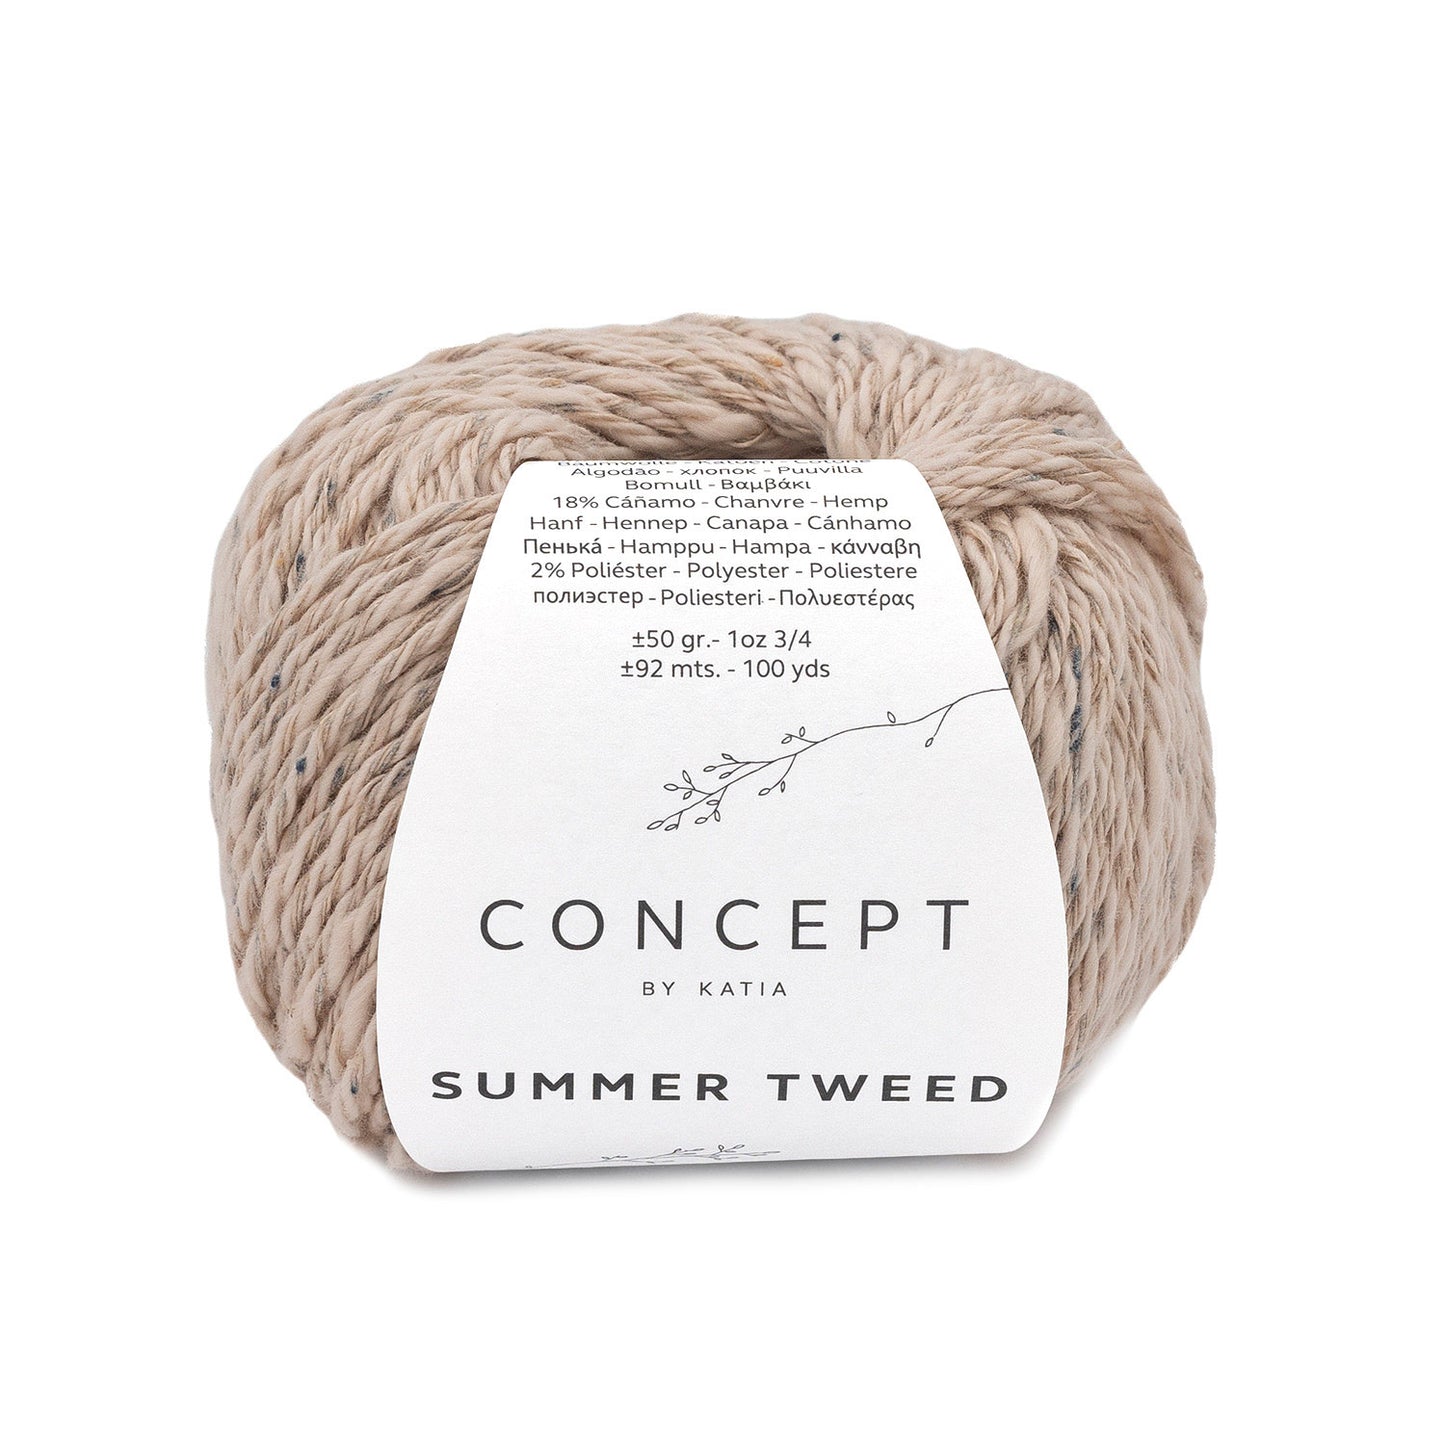 Summer Tweed de Concept Katia